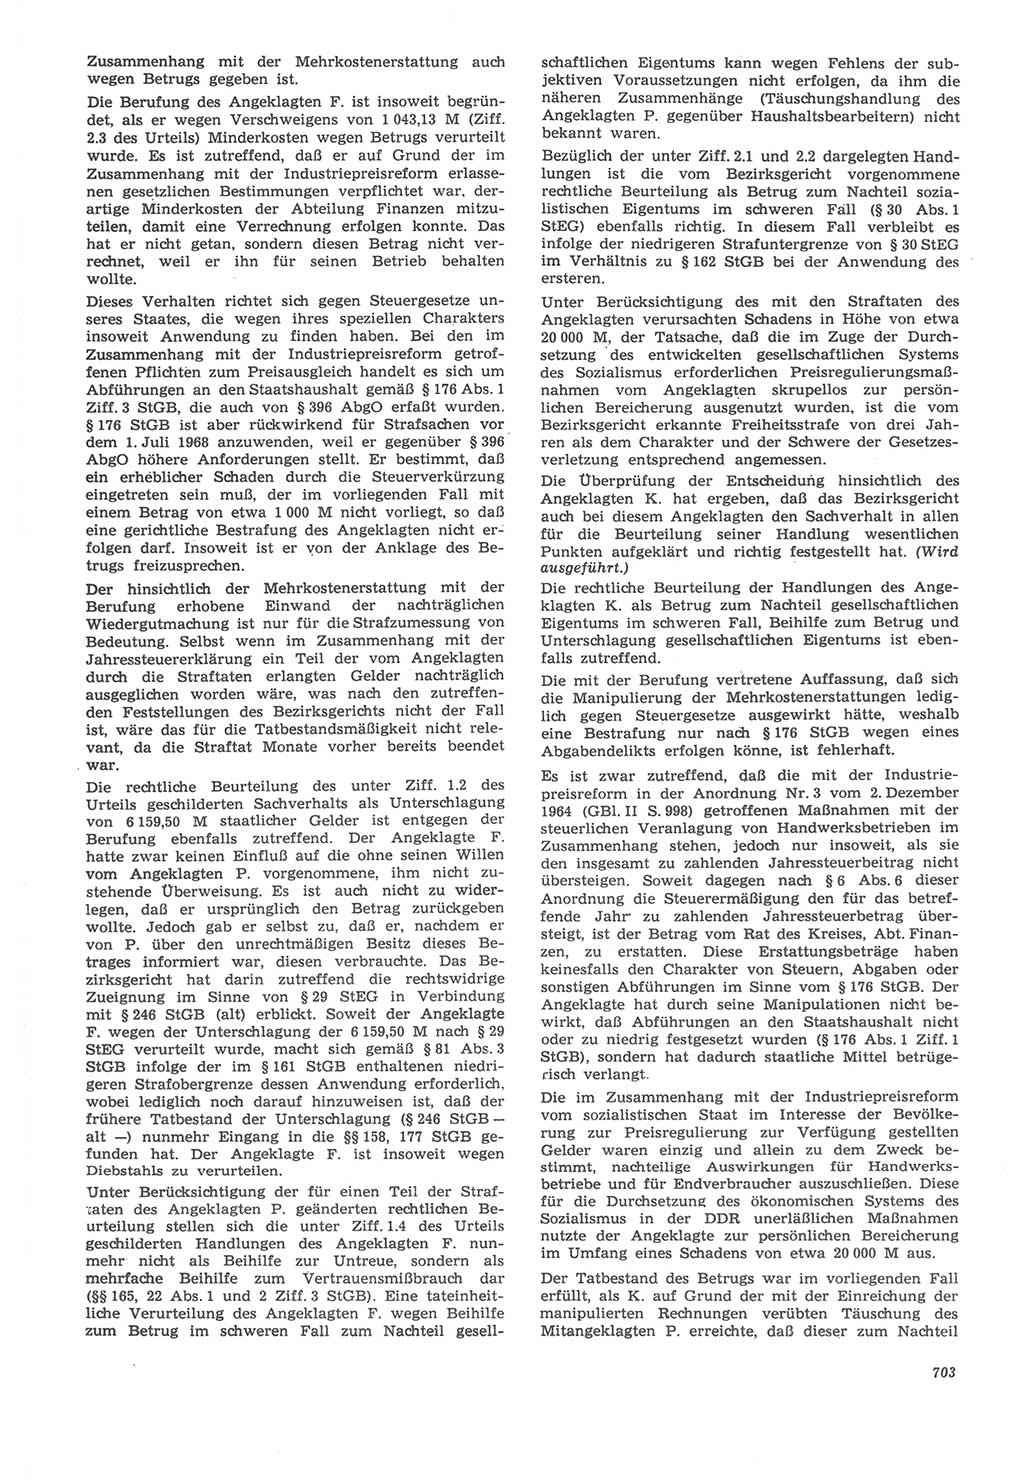 Neue Justiz (NJ), Zeitschrift für Recht und Rechtswissenschaft [Deutsche Demokratische Republik (DDR)], 22. Jahrgang 1968, Seite 703 (NJ DDR 1968, S. 703)